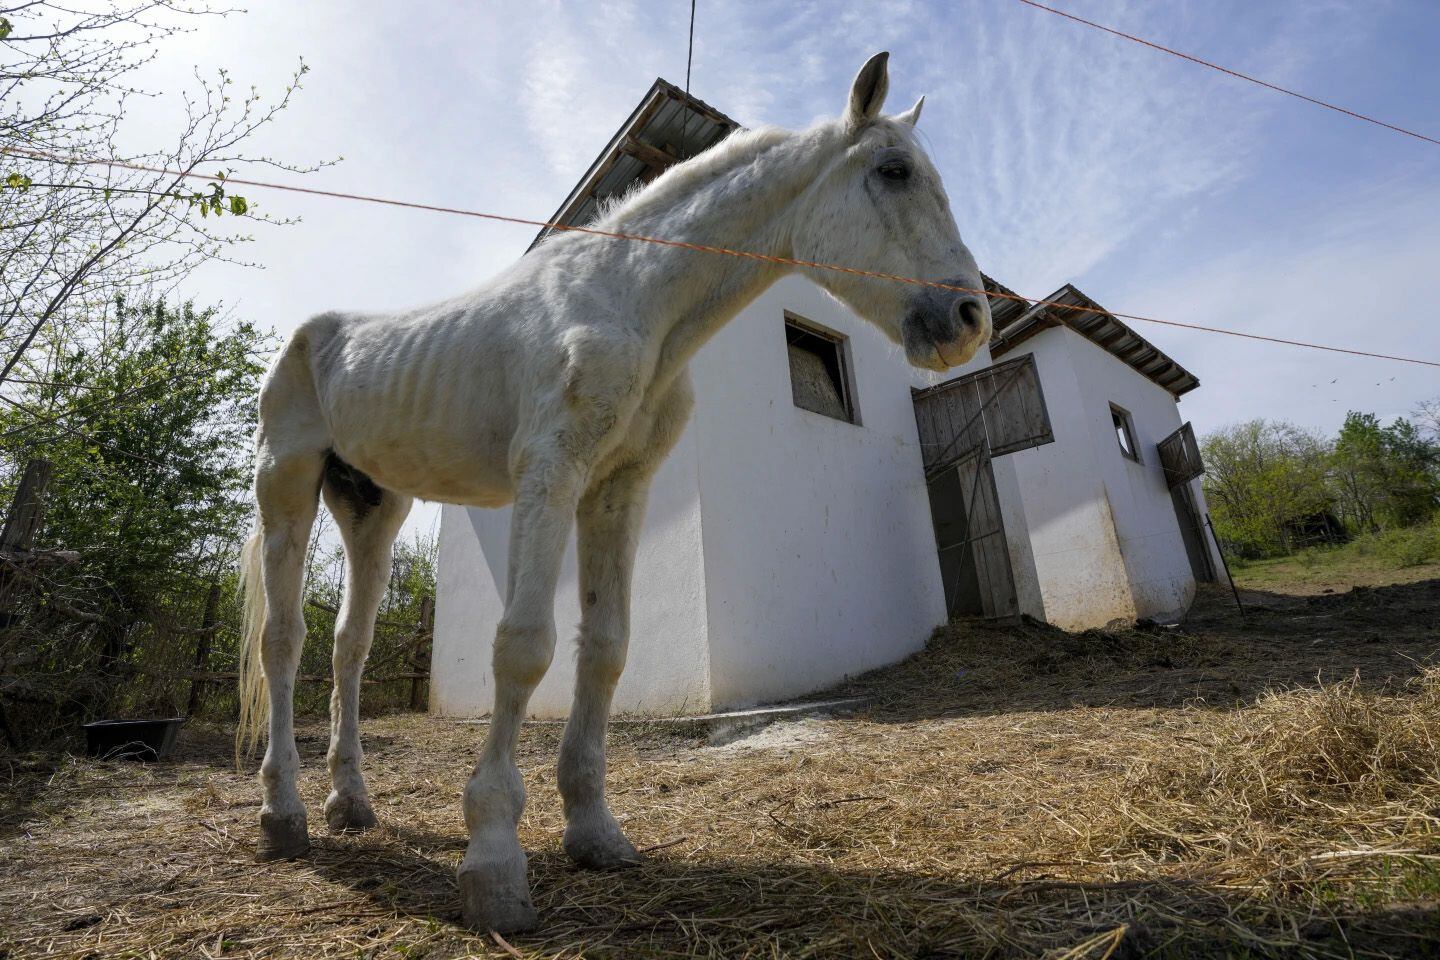 Fue fundado en 2015 por Zeljko Ilicic en un pequeño terreno en Lapovo, Serbia Central. (AP Photo/Darko Vojinovic) Santuarios animales, caballos, equinos, cerdos, burros, animales, mascotas, noticias de animales, noticias de mascotas, Serbia, Lapovo